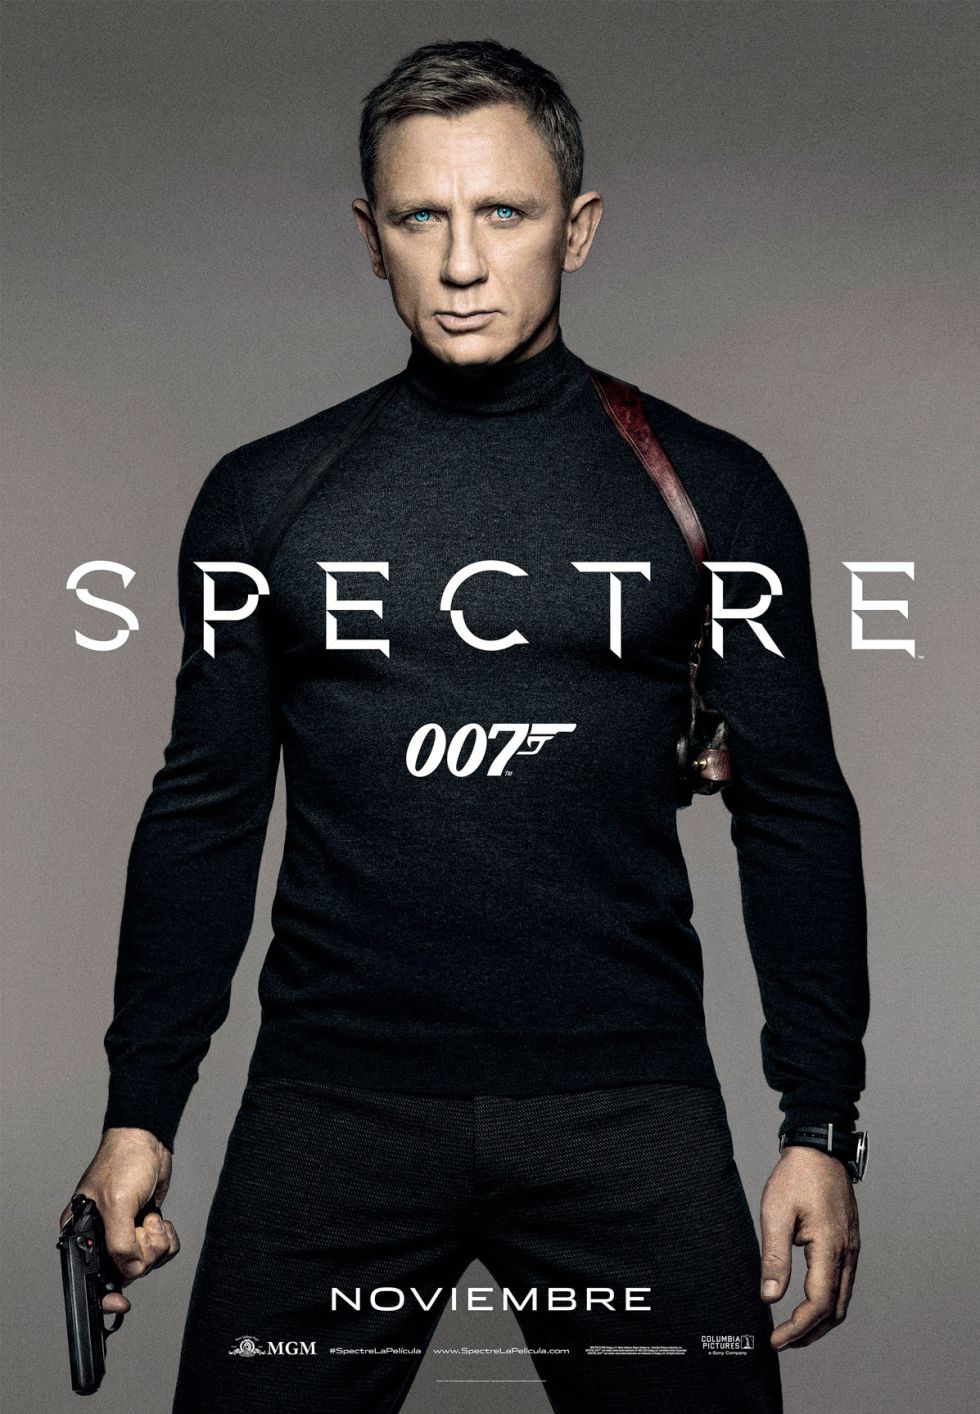 SPECTRE, la mejor entrega de James Bond, con Daniel Craig